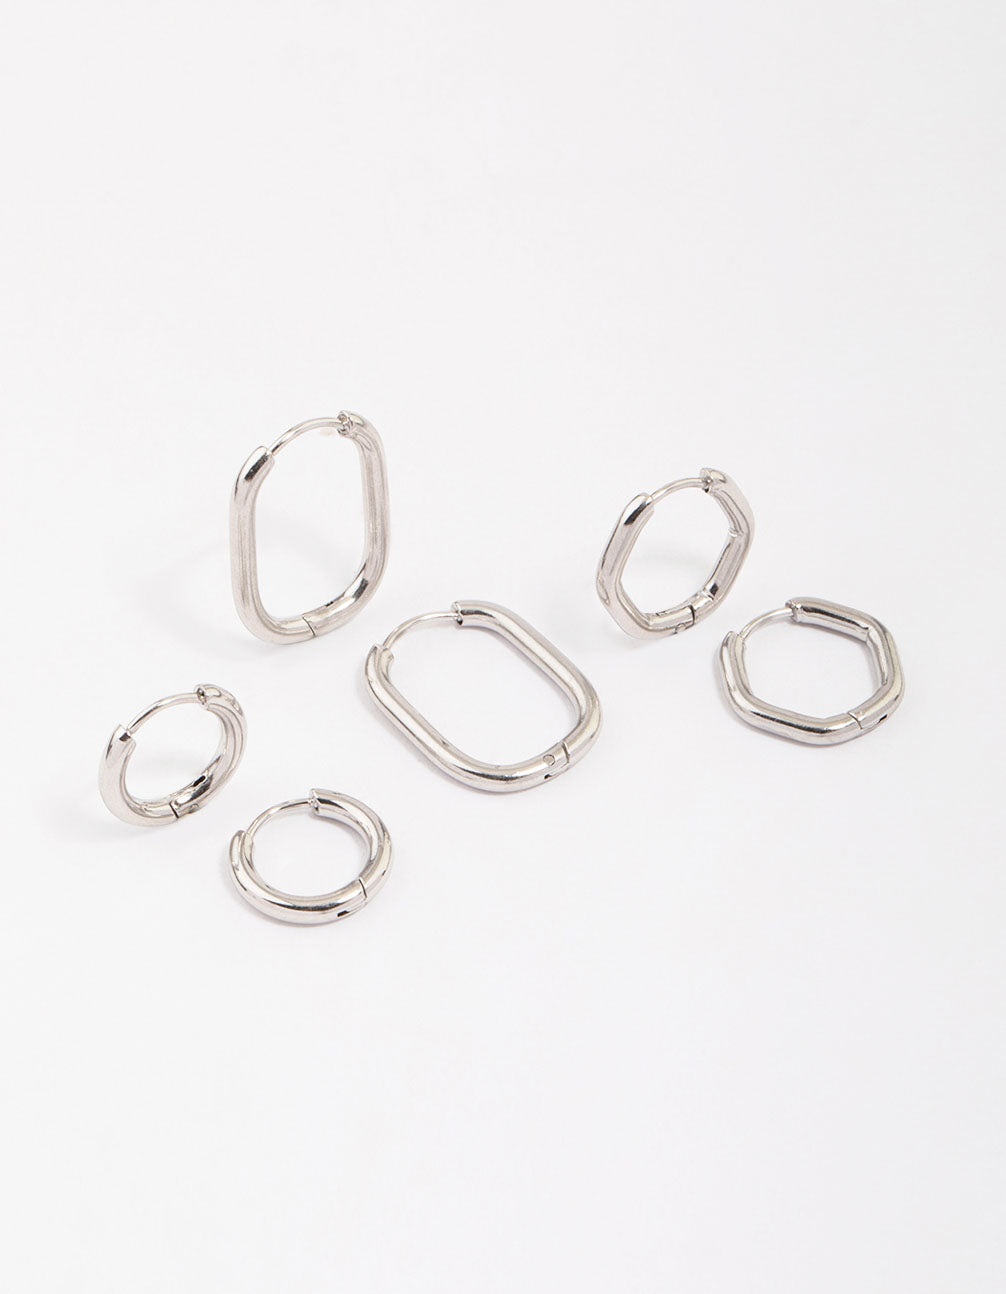 Victoria Cruz Minimal sterling silver hoop earrings in small shape